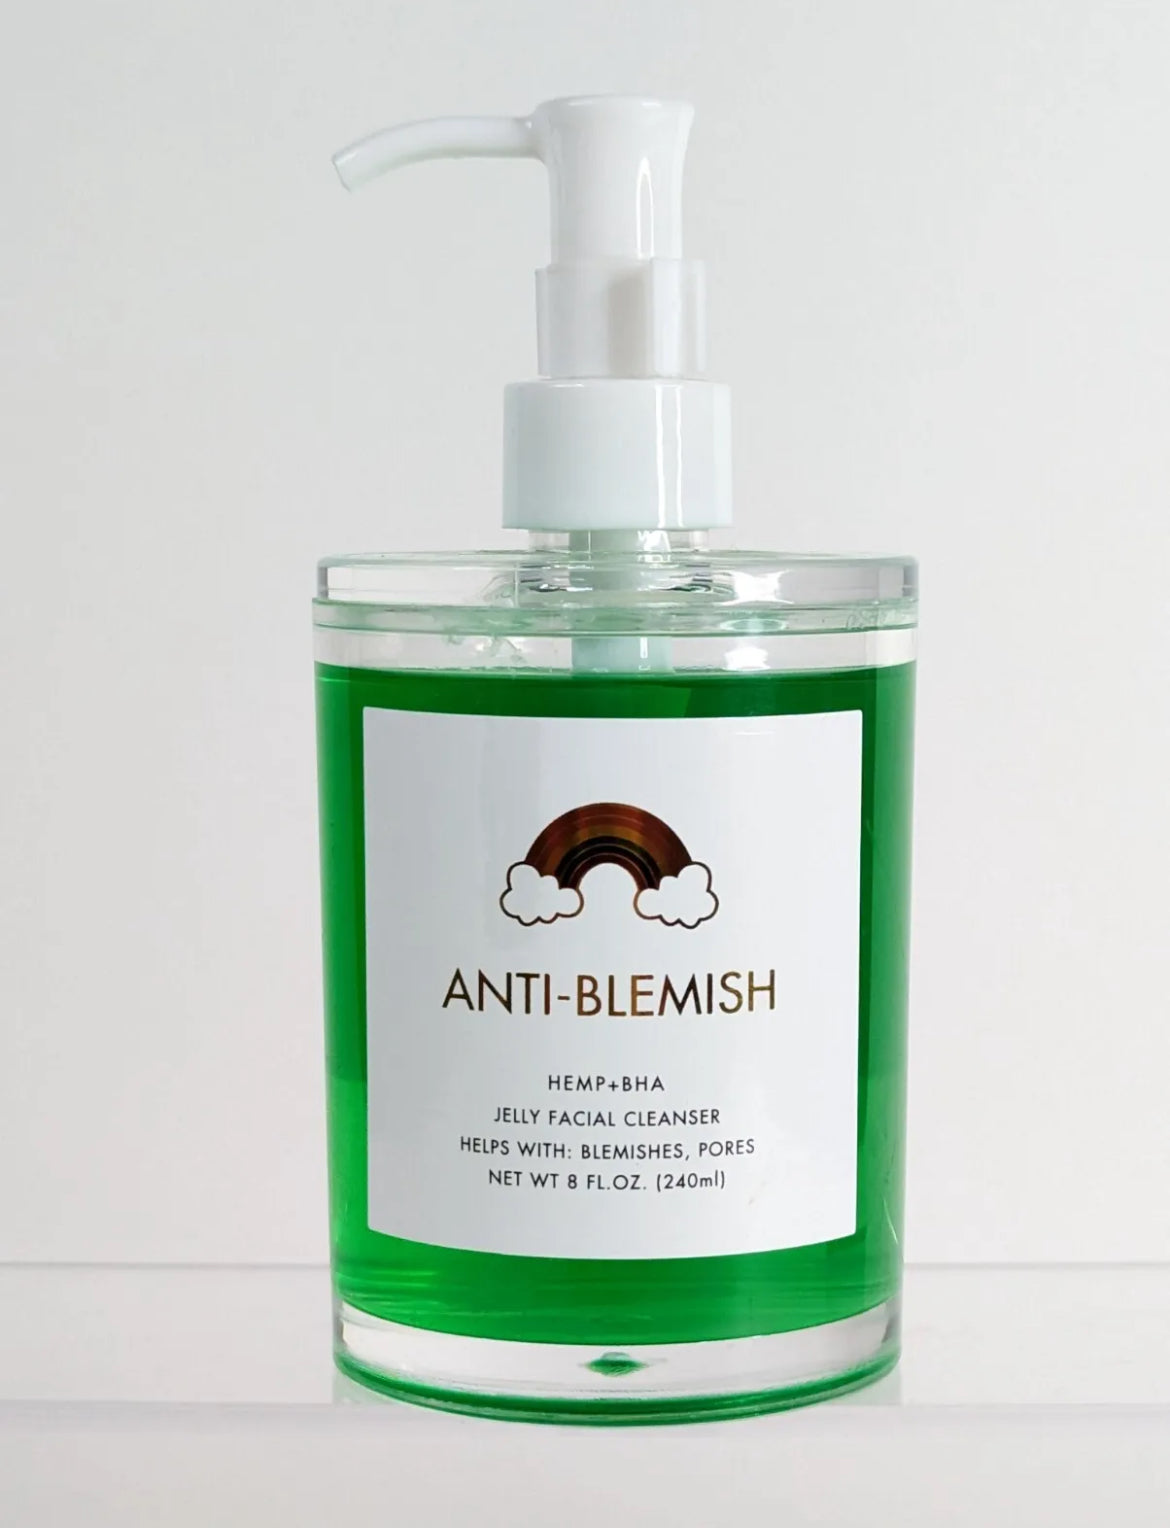 Hemp Face Cleanser Anti-Blemish Hemp + BHA